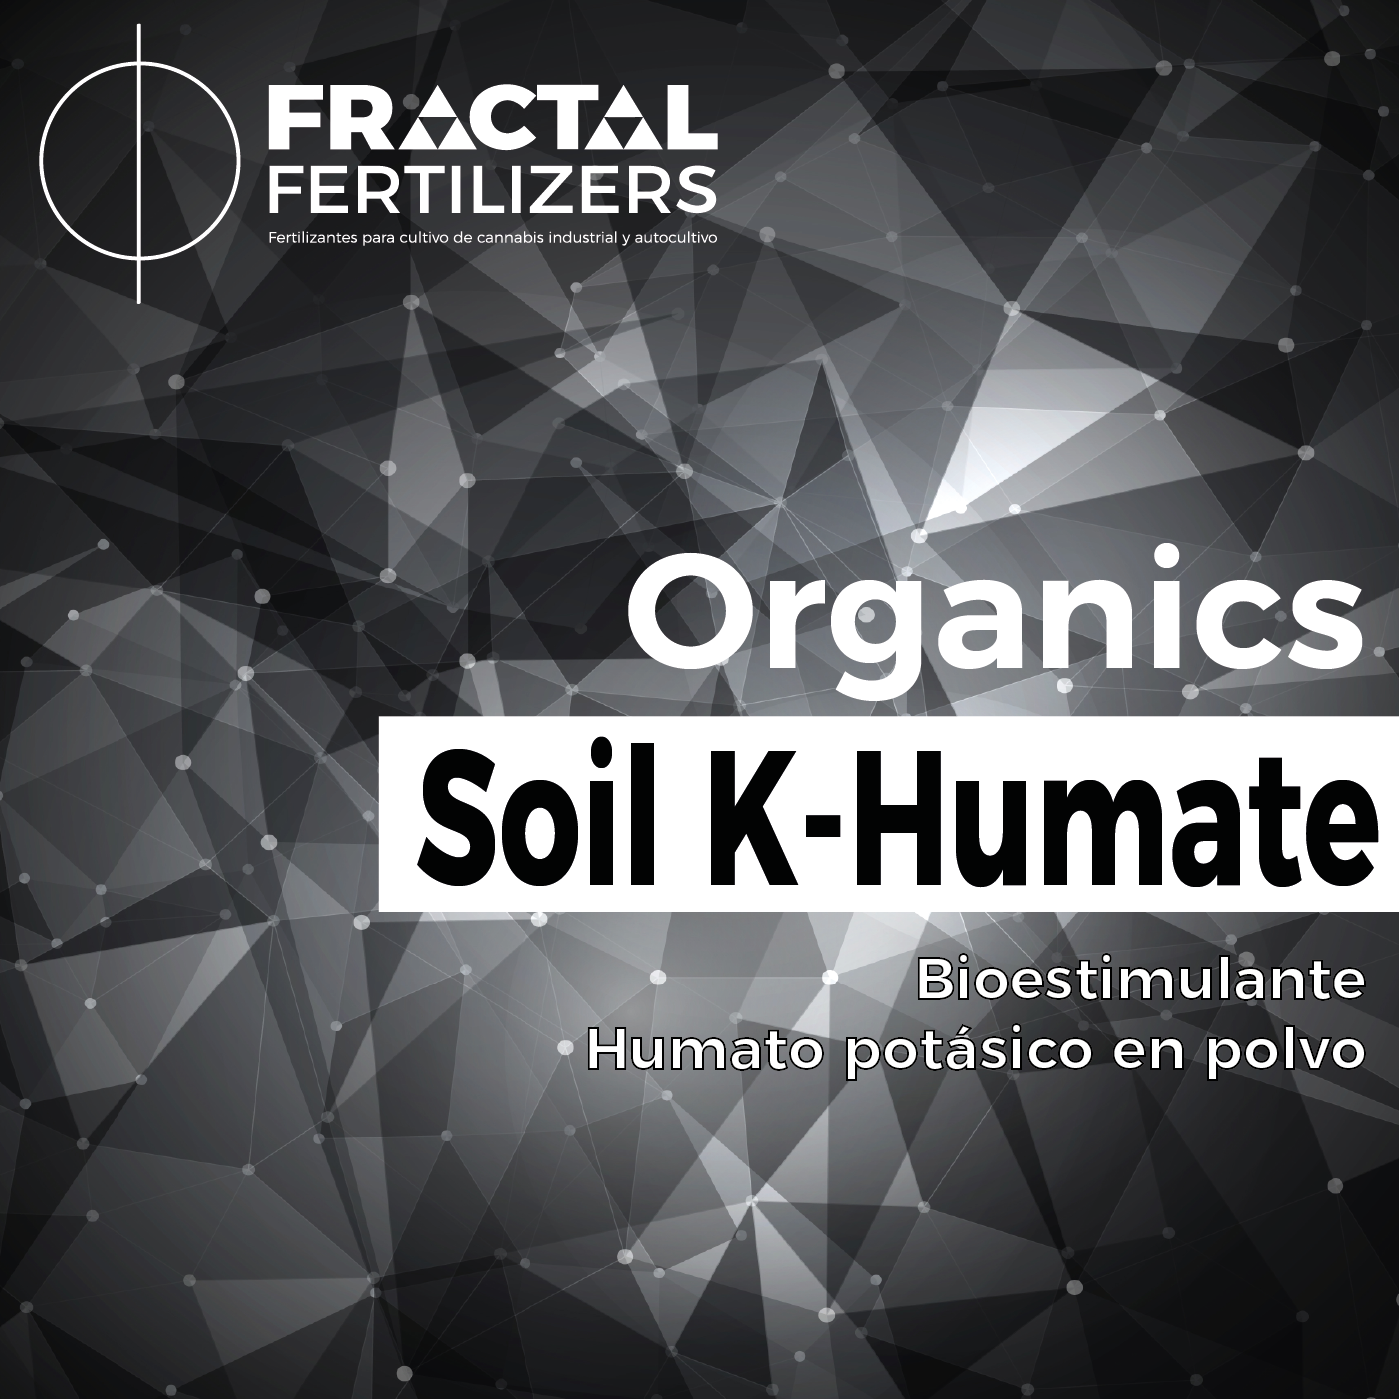 SOIL K-HUMATE - Humato potásico